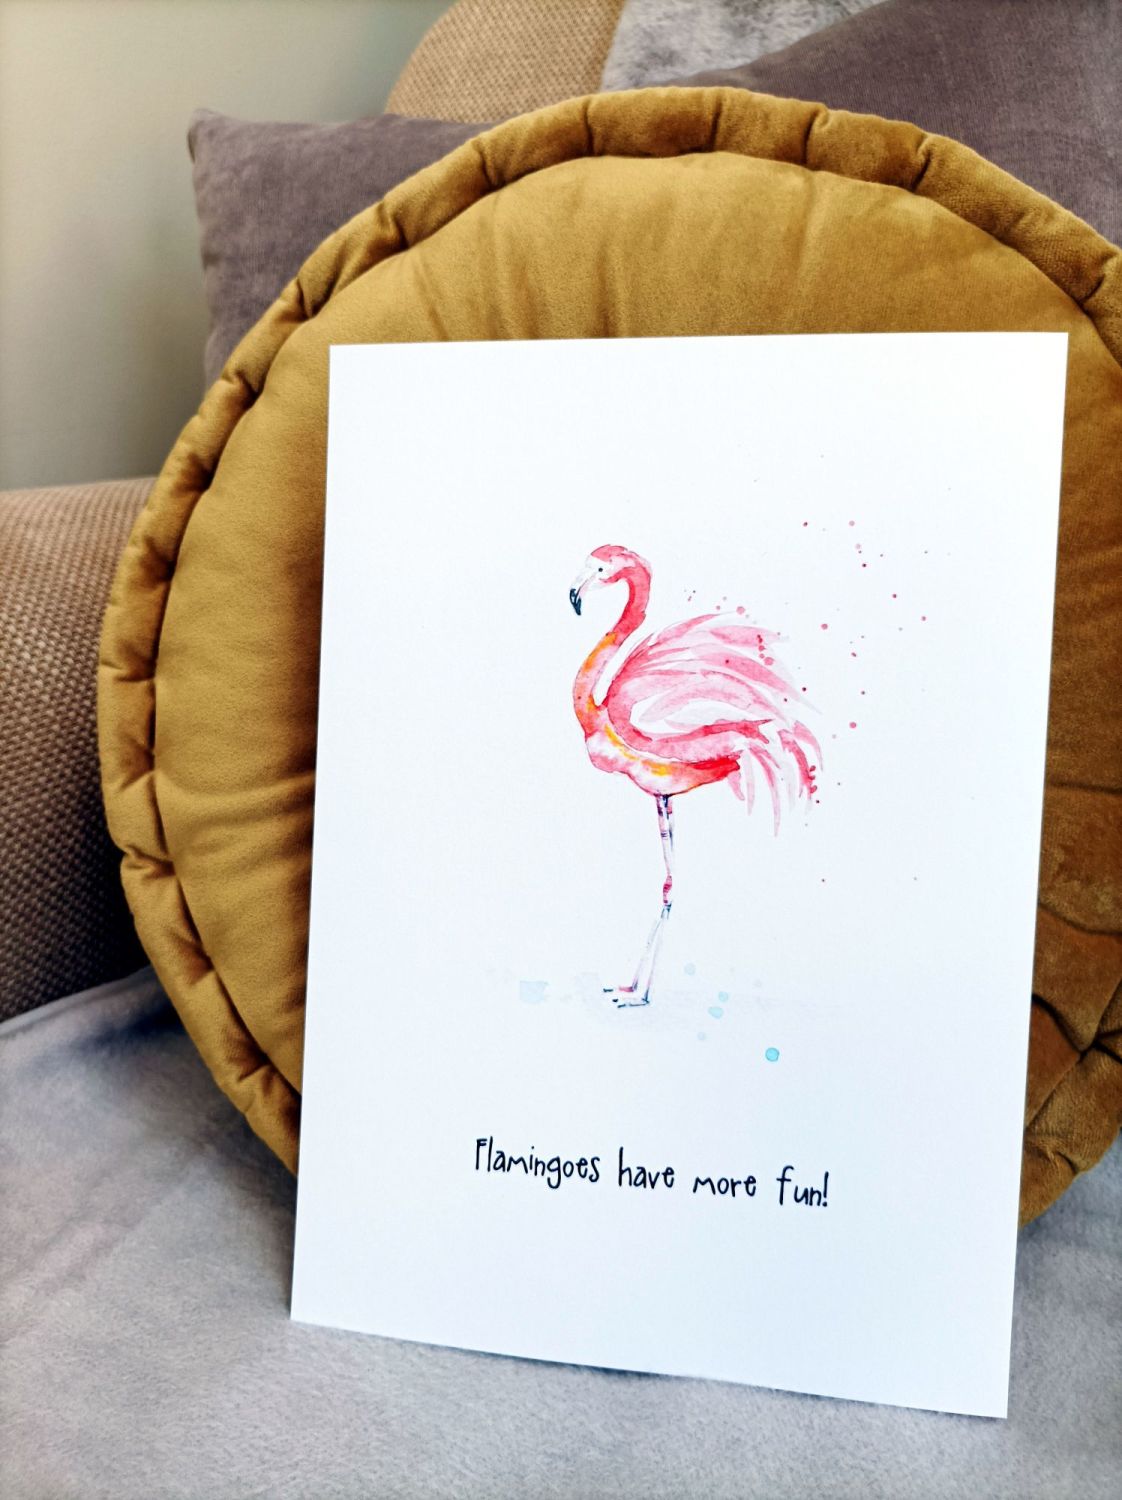 Flamingoes have more fun!